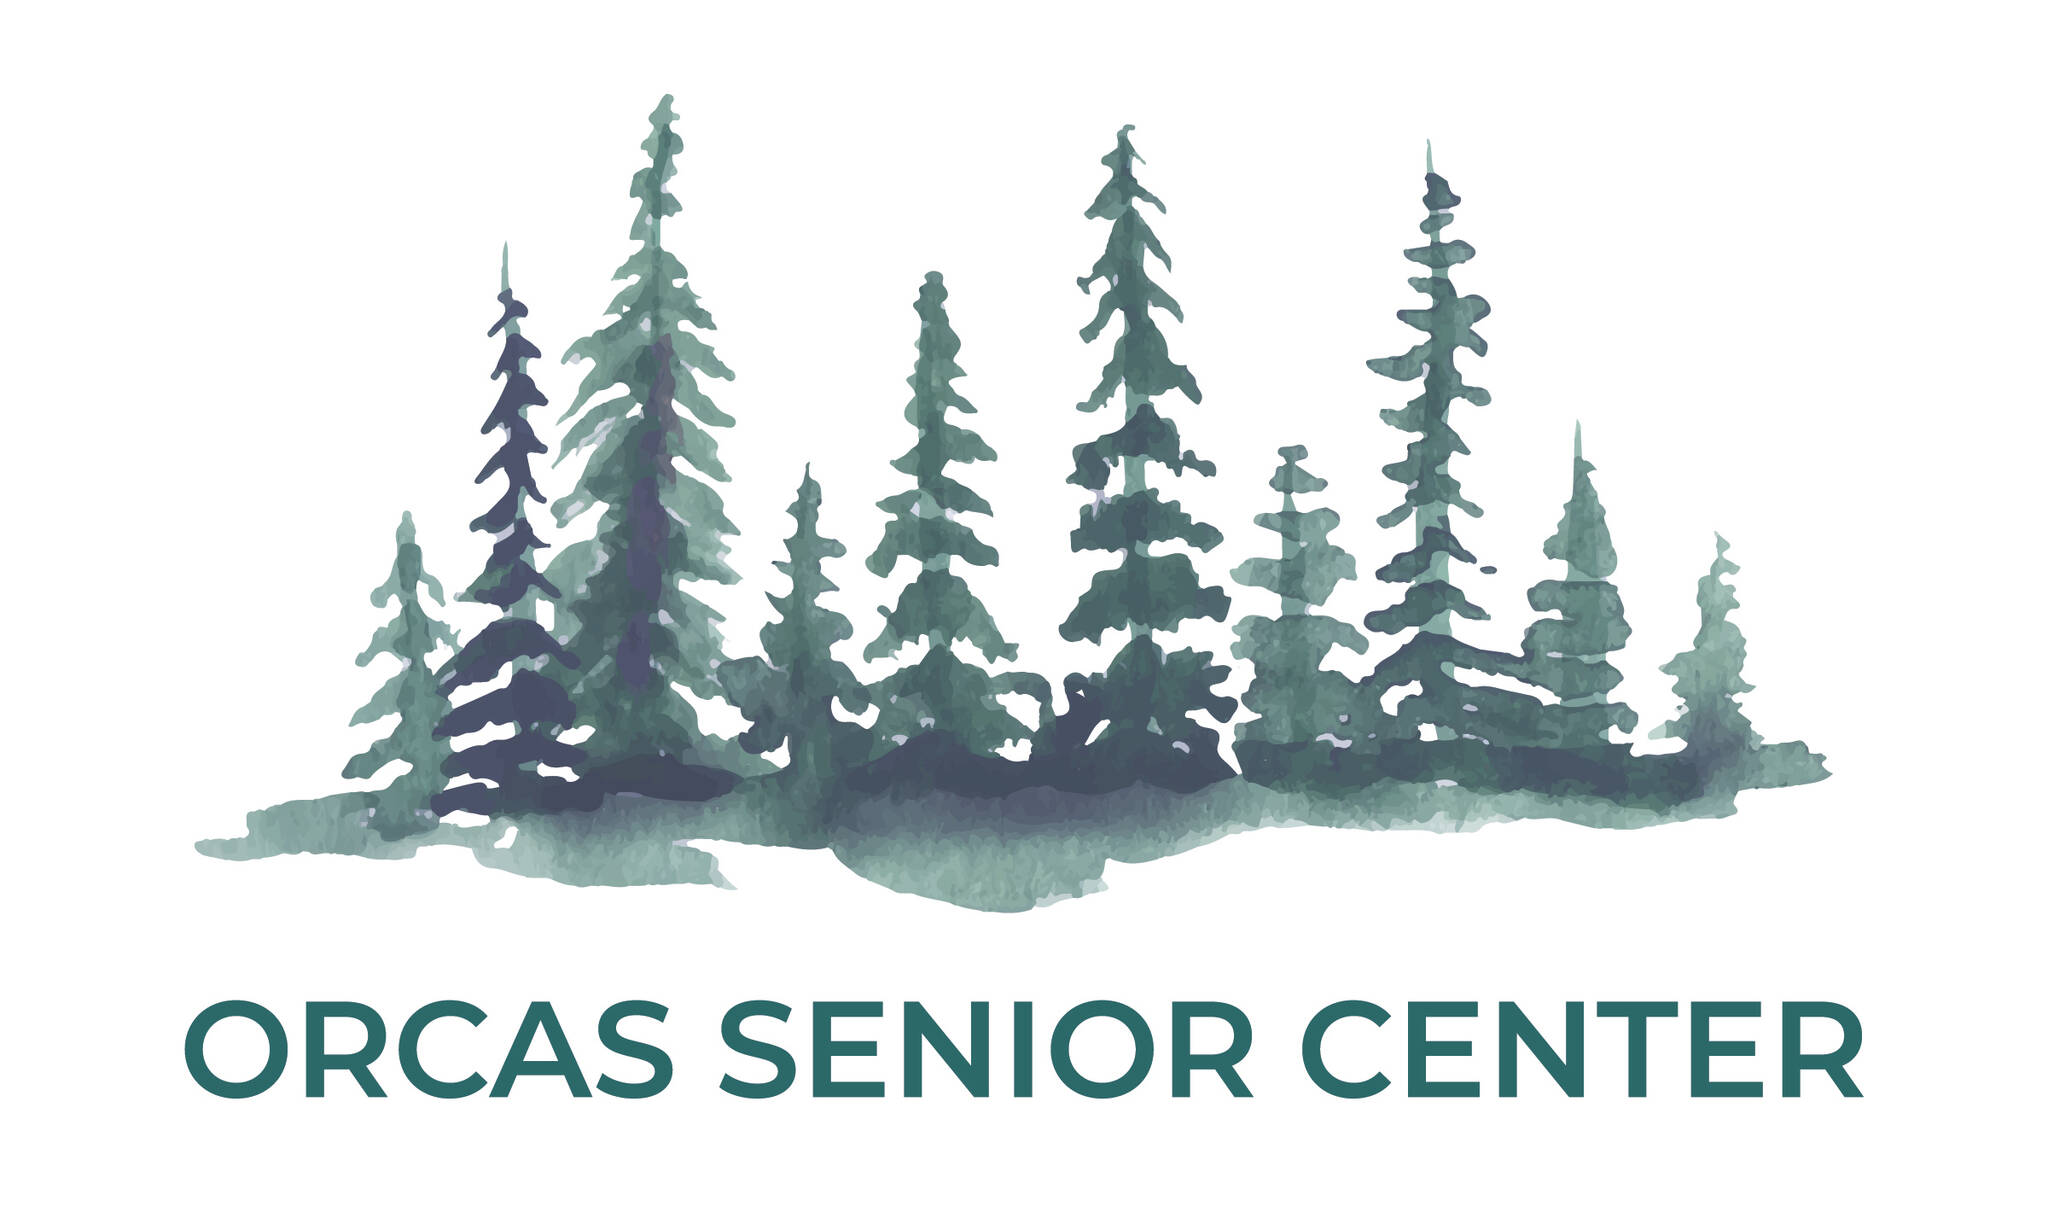 Orcas Senior Center logo.